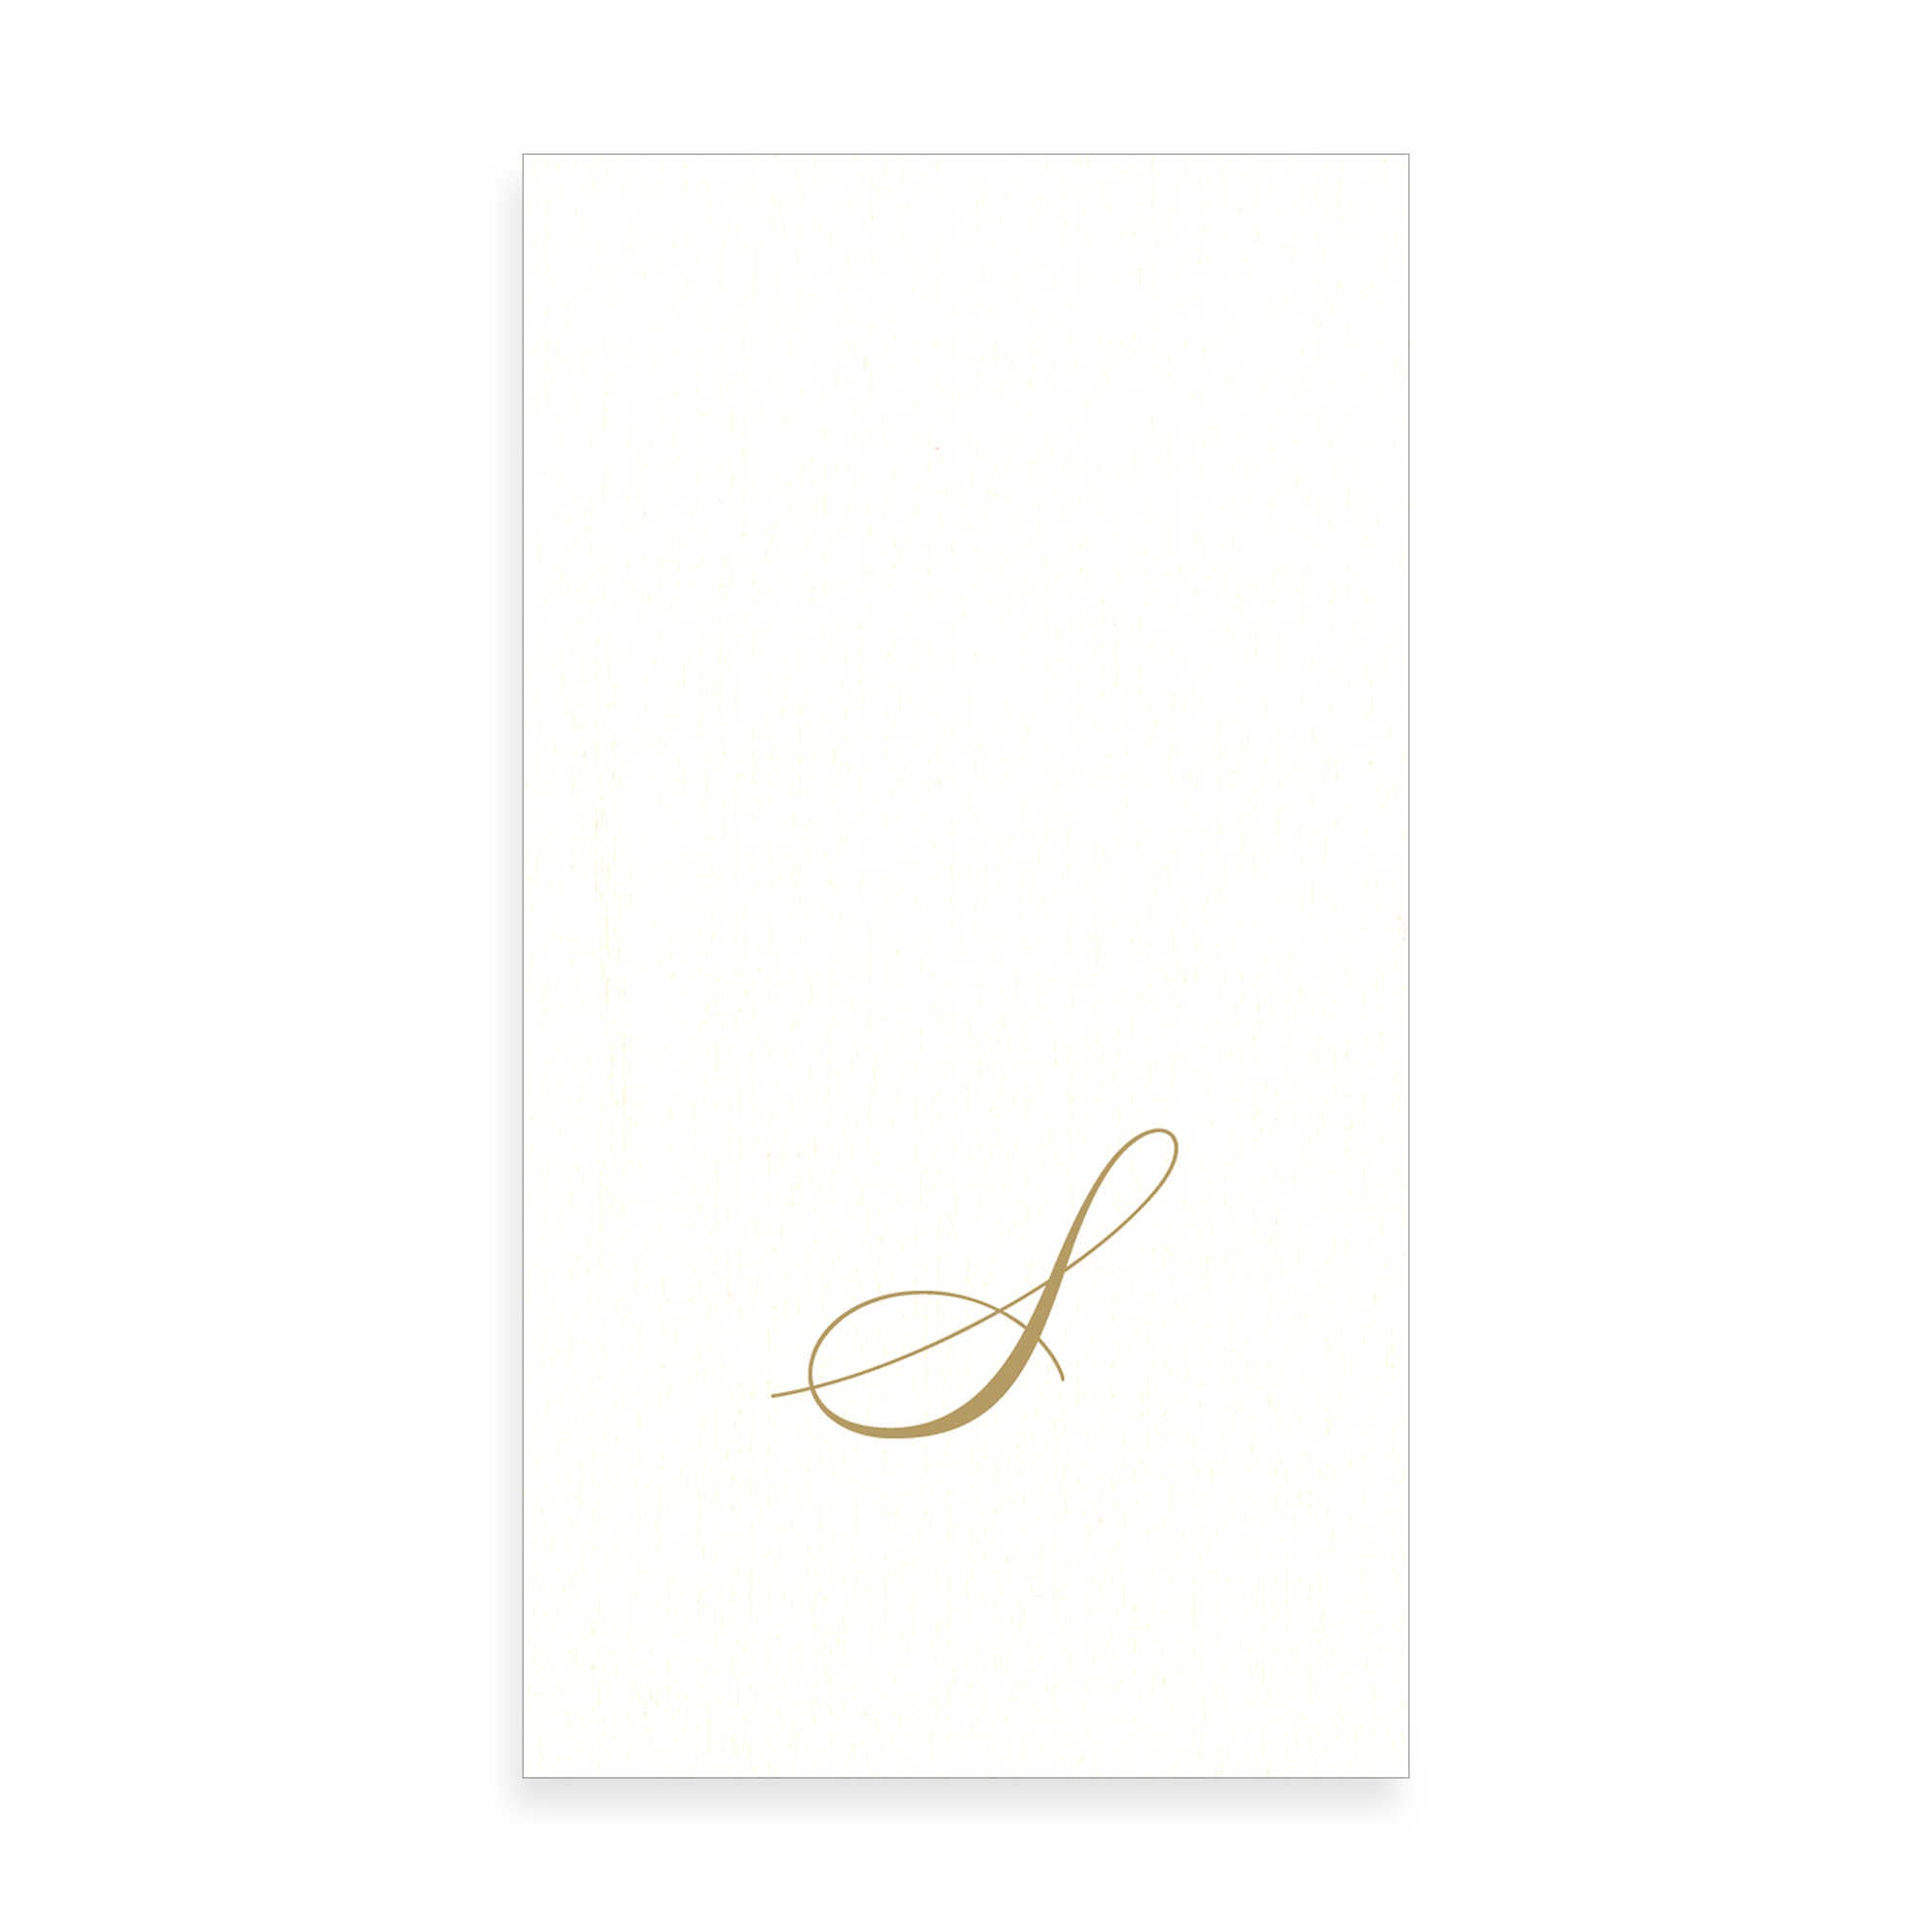  Gold Monogram Paper Guest Towel - Letter S, CI-Caspari, Putti Fine Furnishings